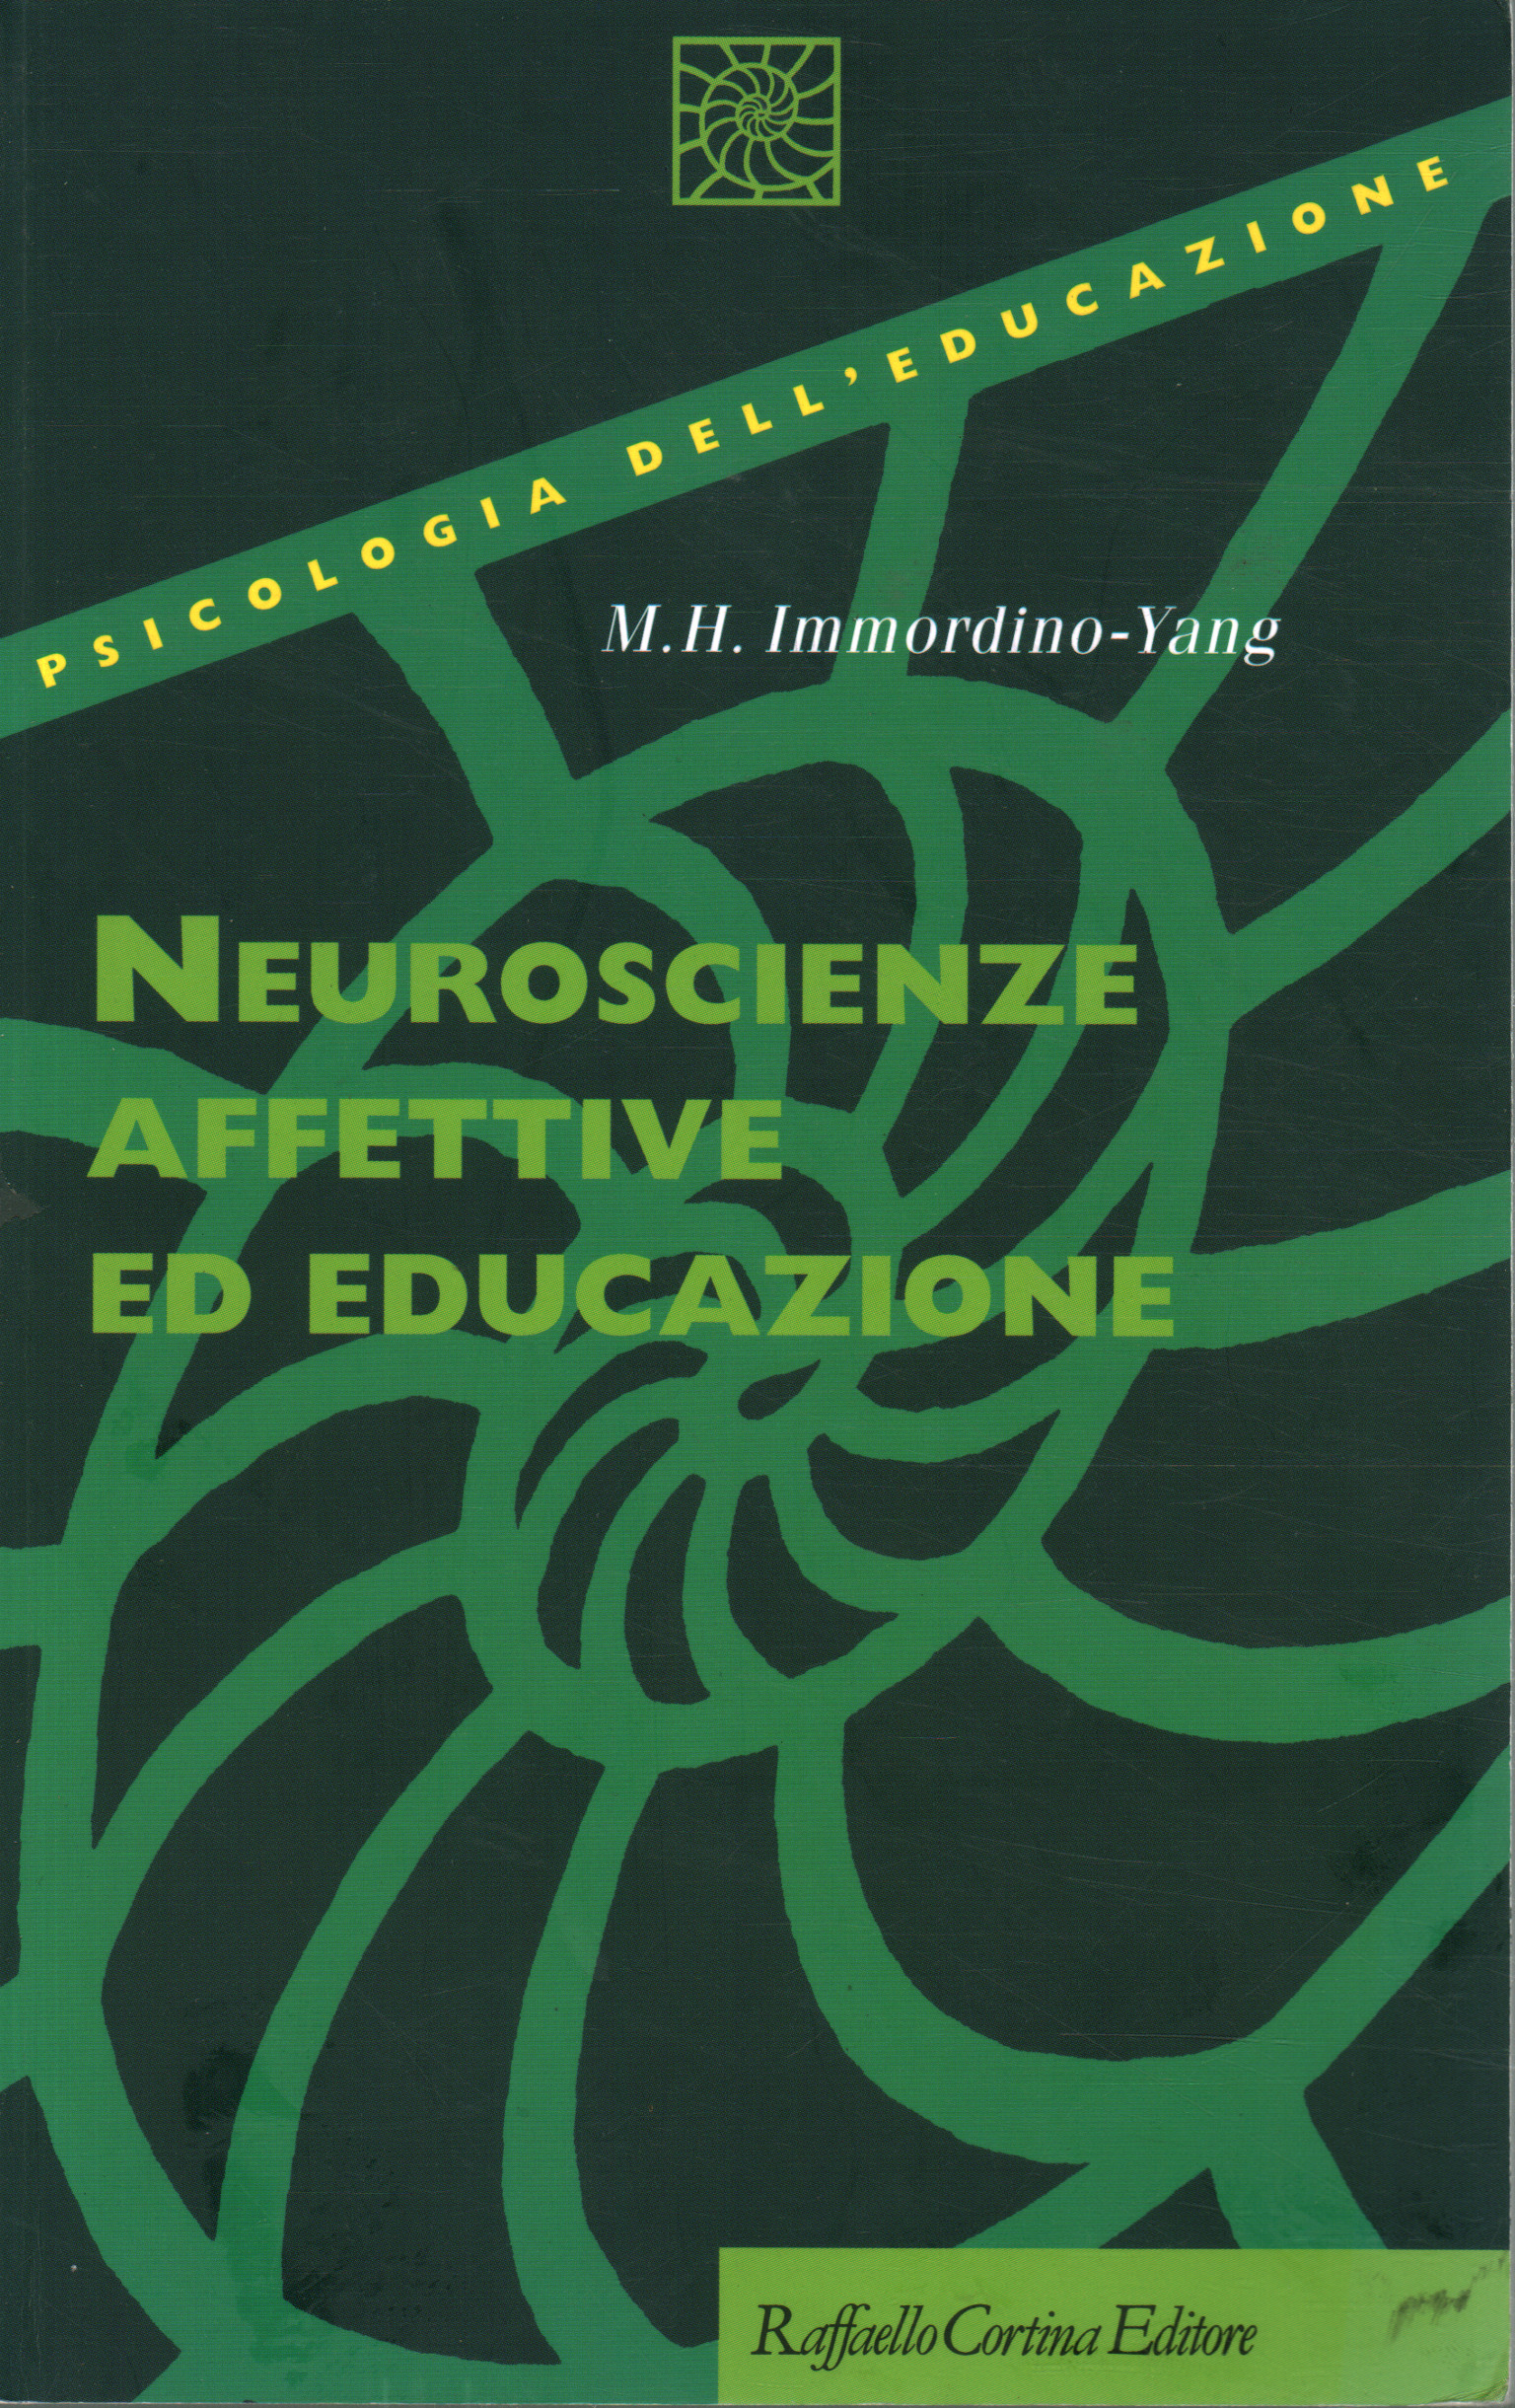 Affektive Neurowissenschaften und Bildung, Mary Helen Immordino-Yang